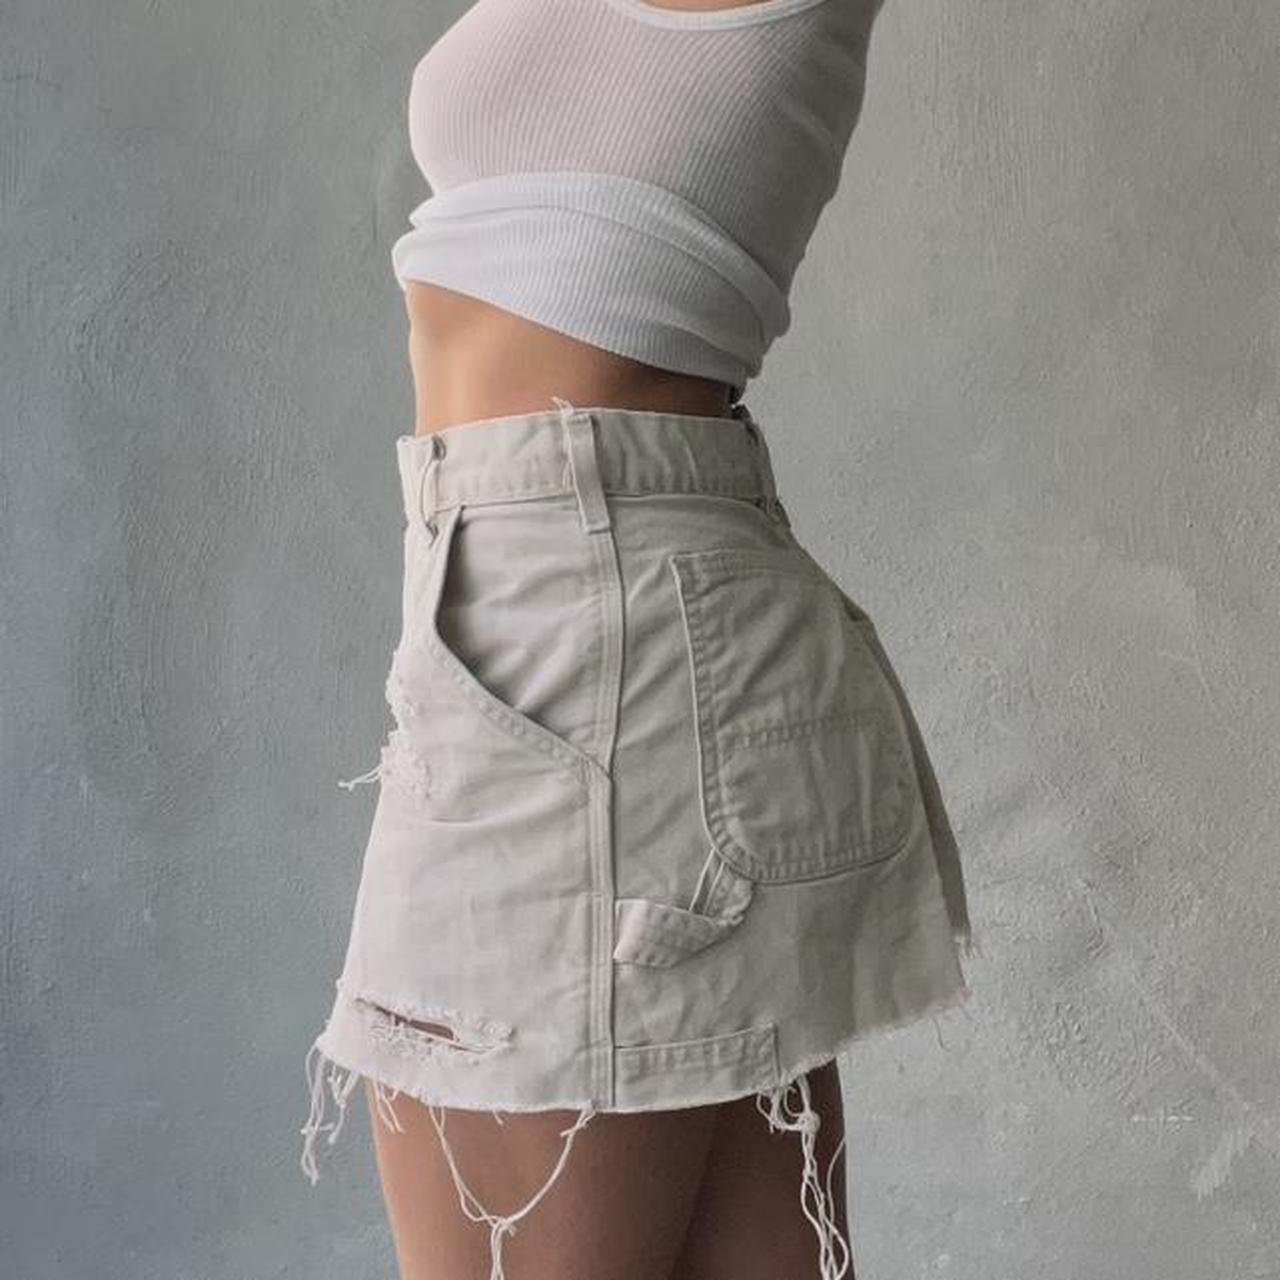 Custom carhartt skirt Made from pants Size 26 - Depop